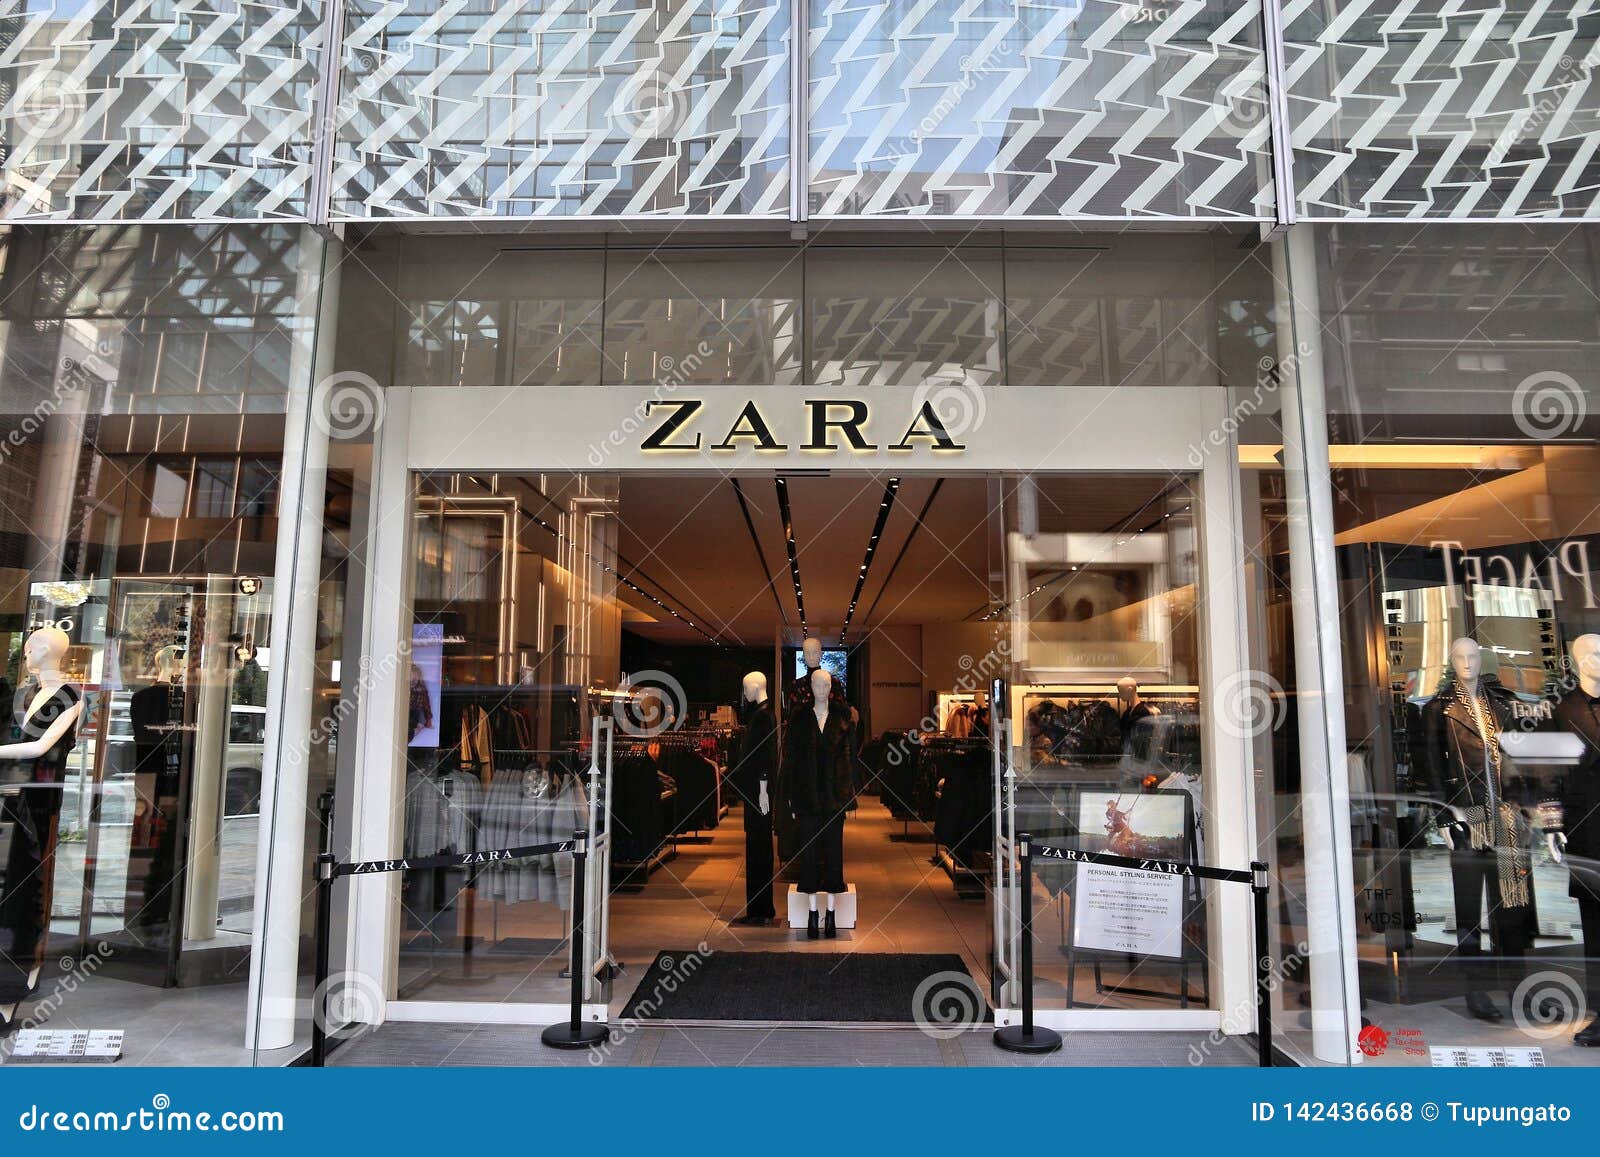 Zara in Tokyo editorial stock photo. Image of vibrant - 142436668